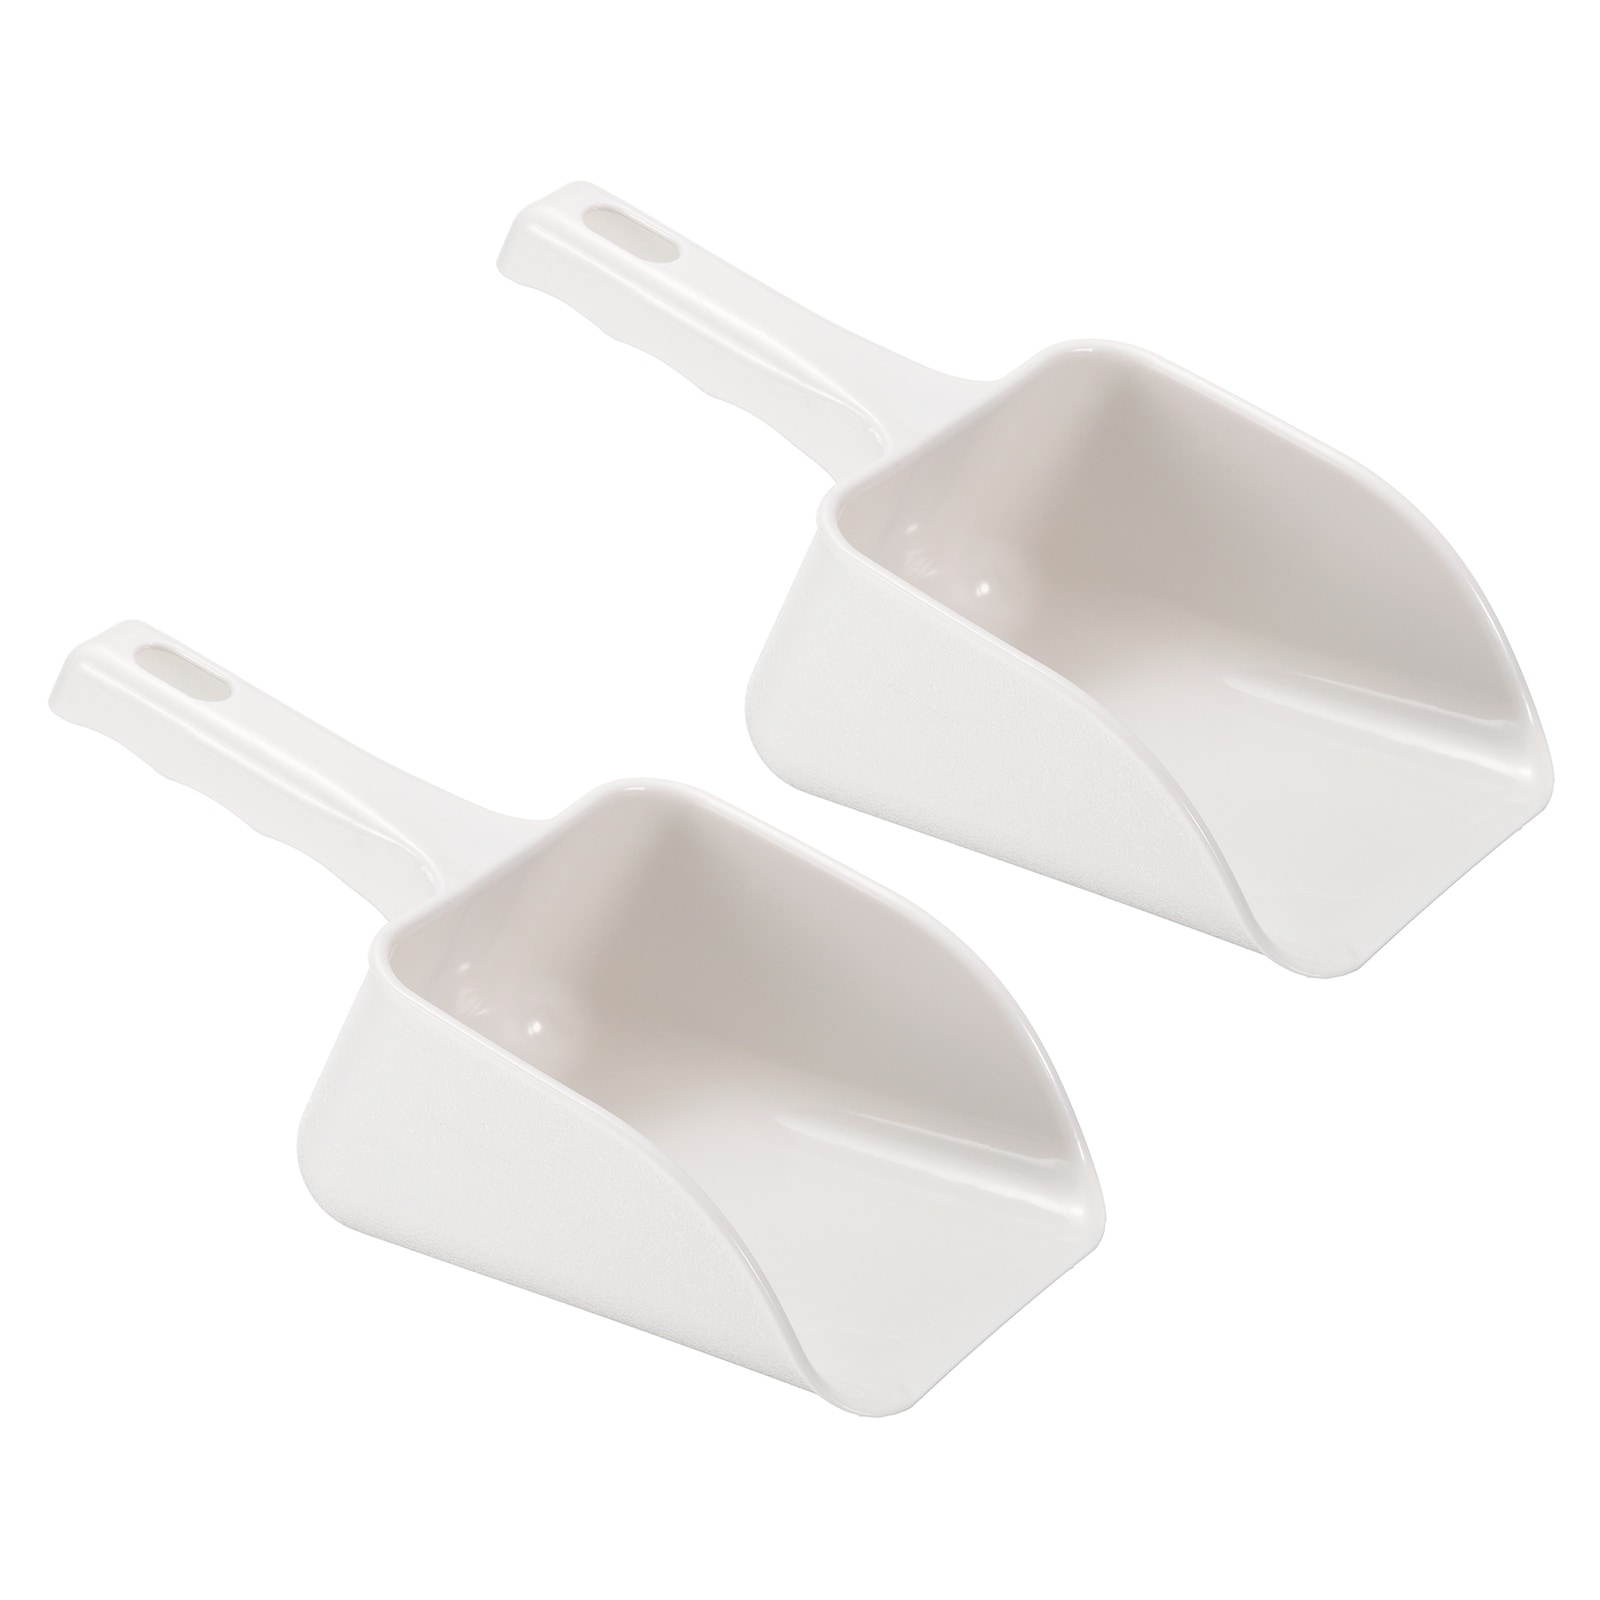 multi-function plastic scoop soil shovel spoons